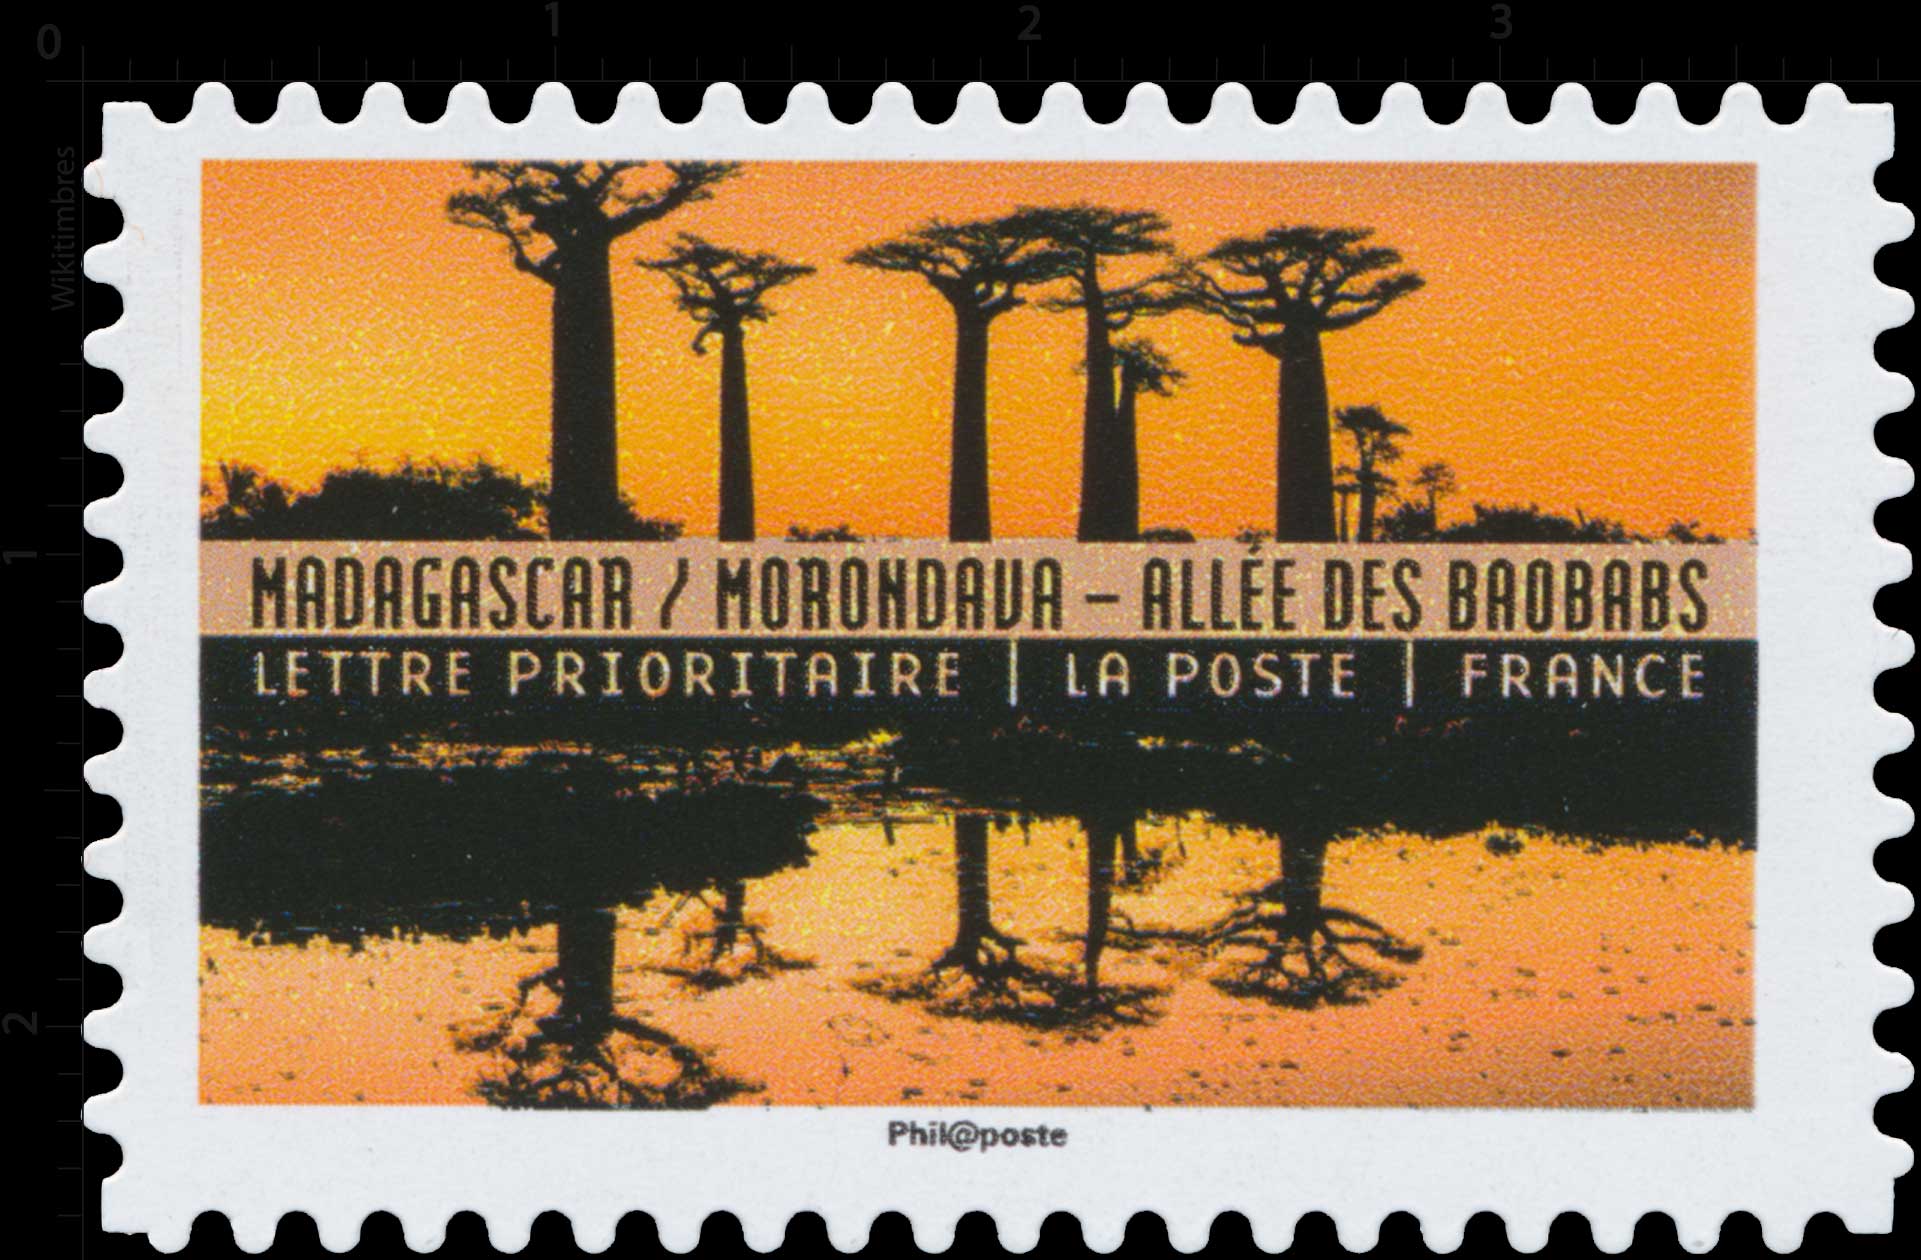 2017 Madagascar / Morondava - Allée des baobabs